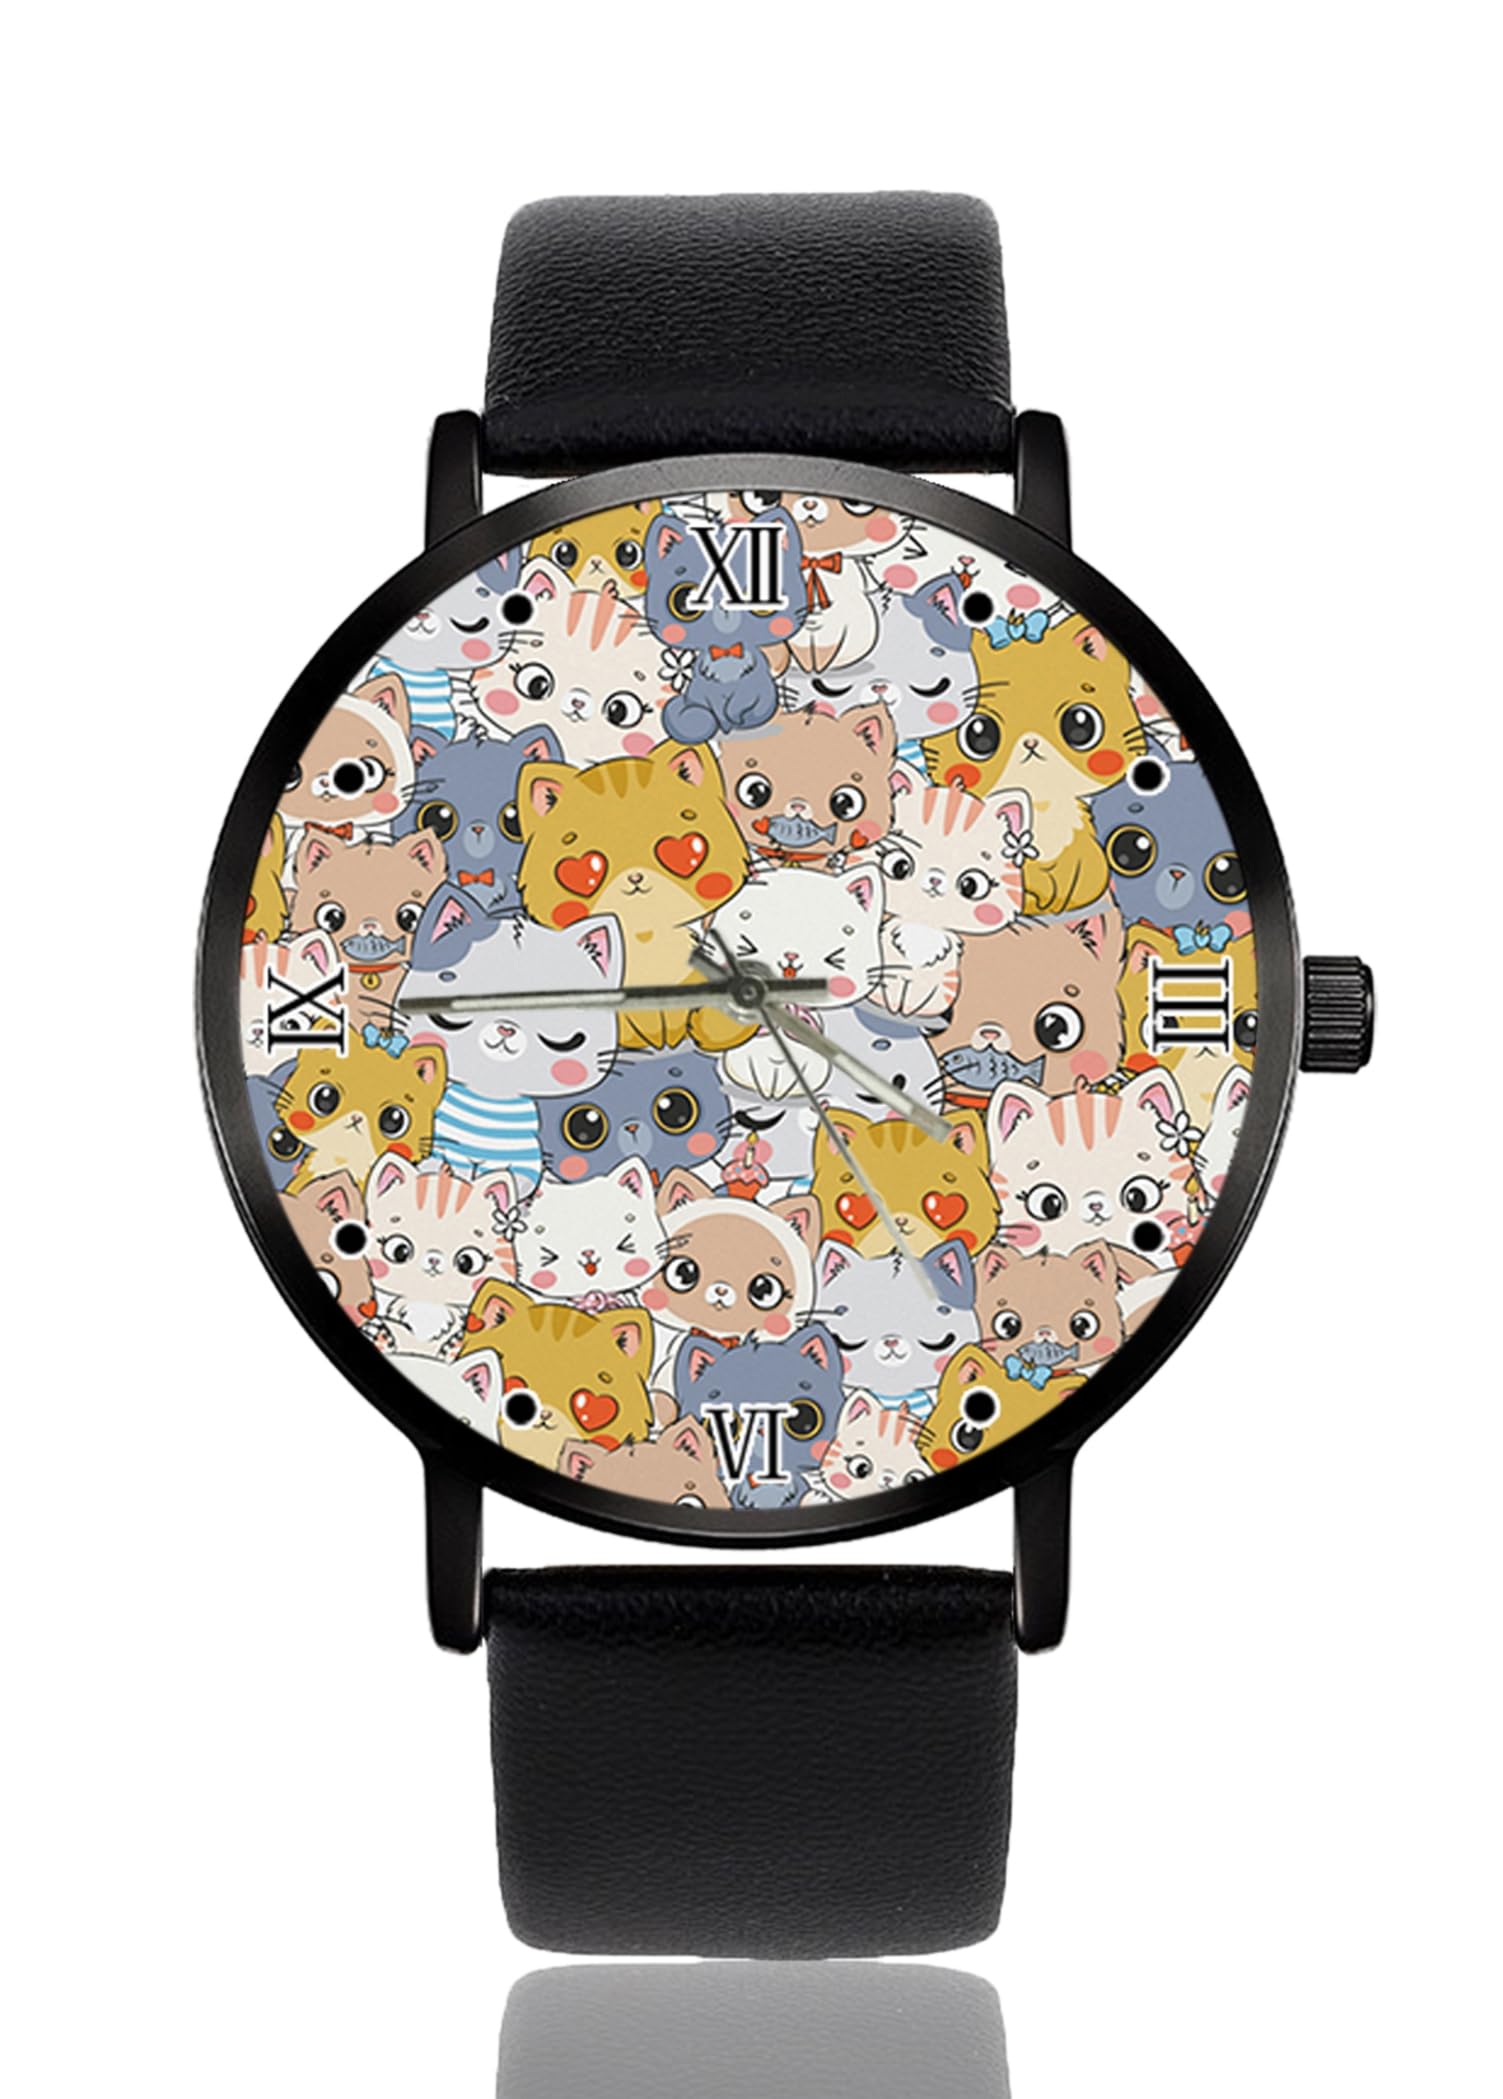 Uhr Personalisierte benutzerdefinierte Uhren Casual Schwarz Lederband Armbanduhren für Männer Frauen Unisex, Süße Kawaii-Katzen